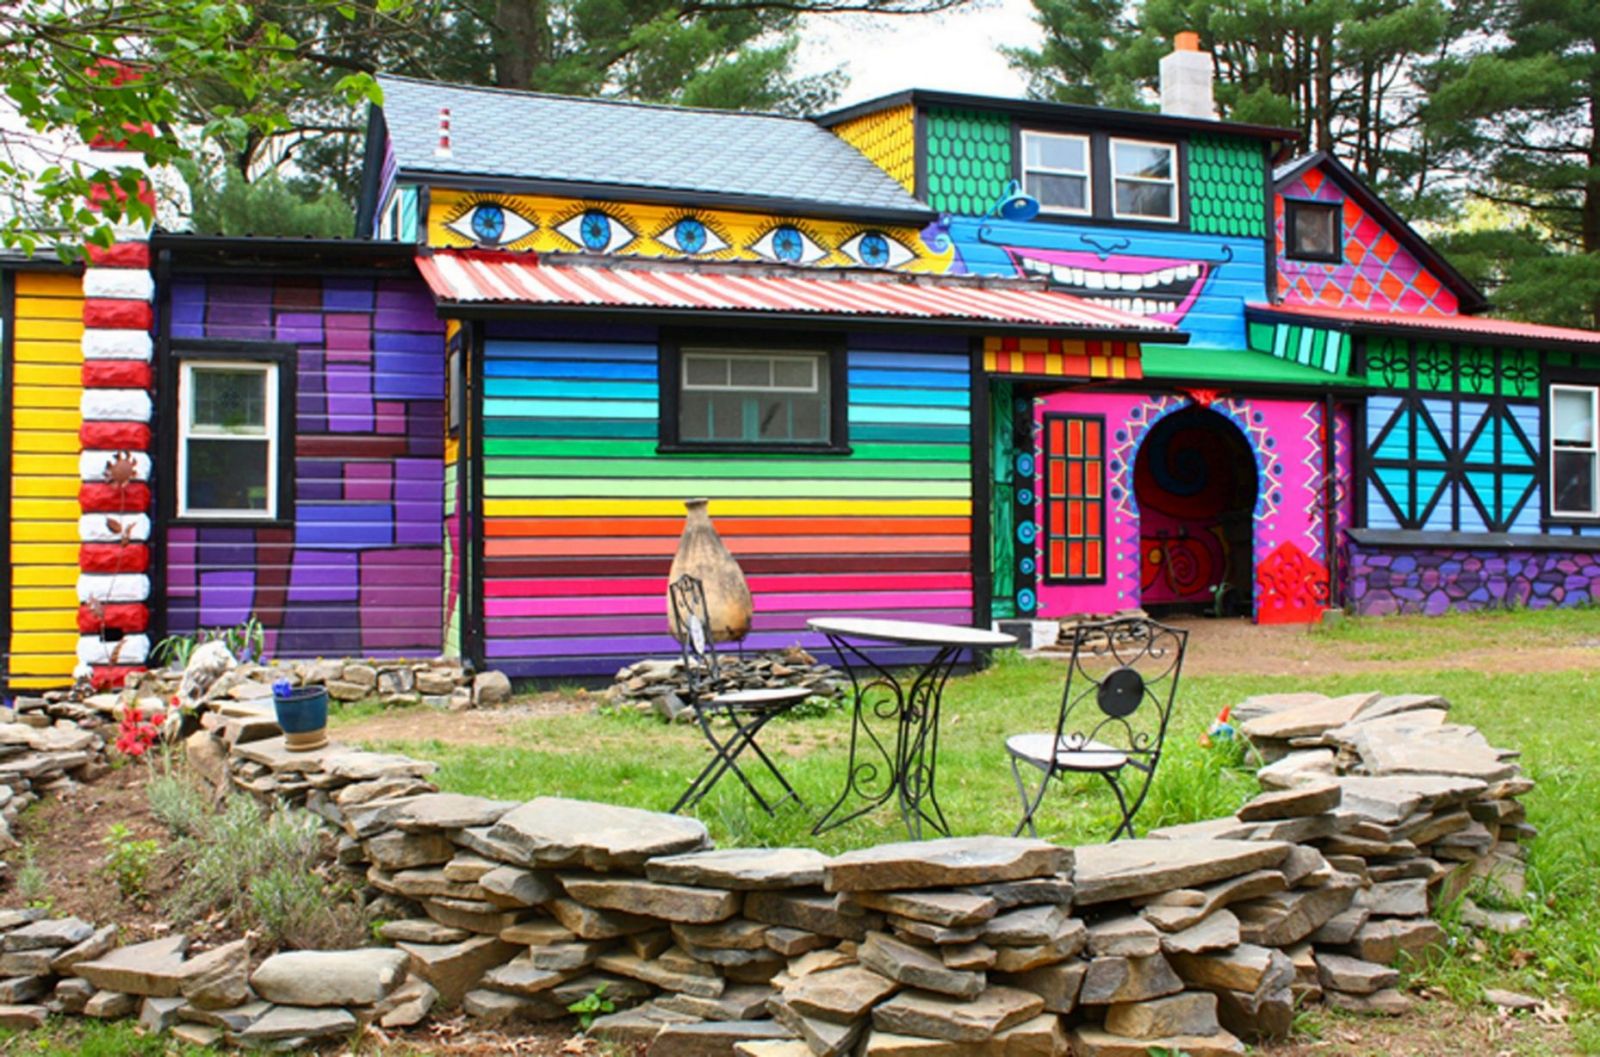 Colorful houses. Разноцветный дом. Разноцветные домики. Яркие фасады домов. Разноцветный дачный домик.